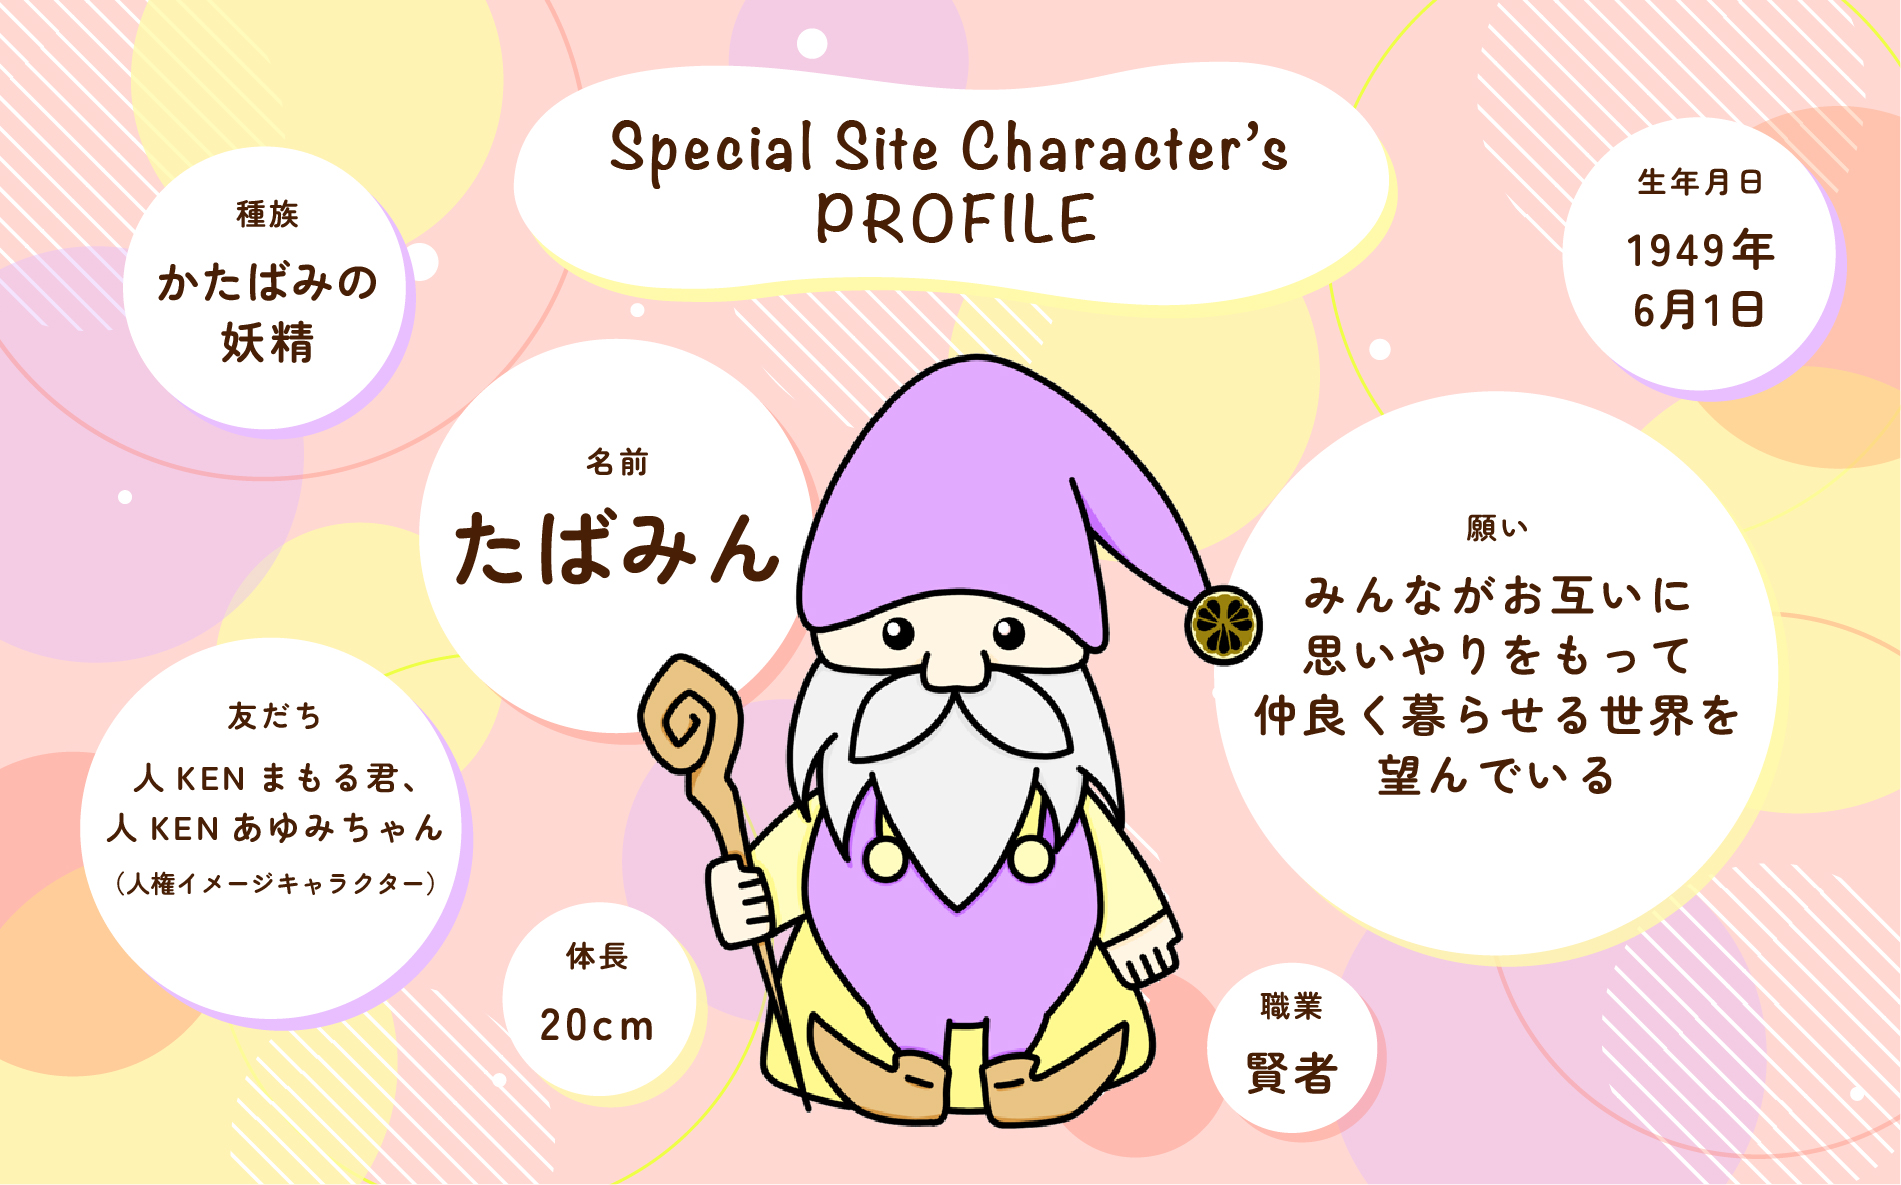 Special Site Character’s PROFILE 名前：たばみん　種族：かたばみの妖精　職業：賢者　生年月日：1949年６月１日　体長：２０ｃｍ　願い：みんながお互いに思いやりをもって仲良く暮らせる世界を望んでいる